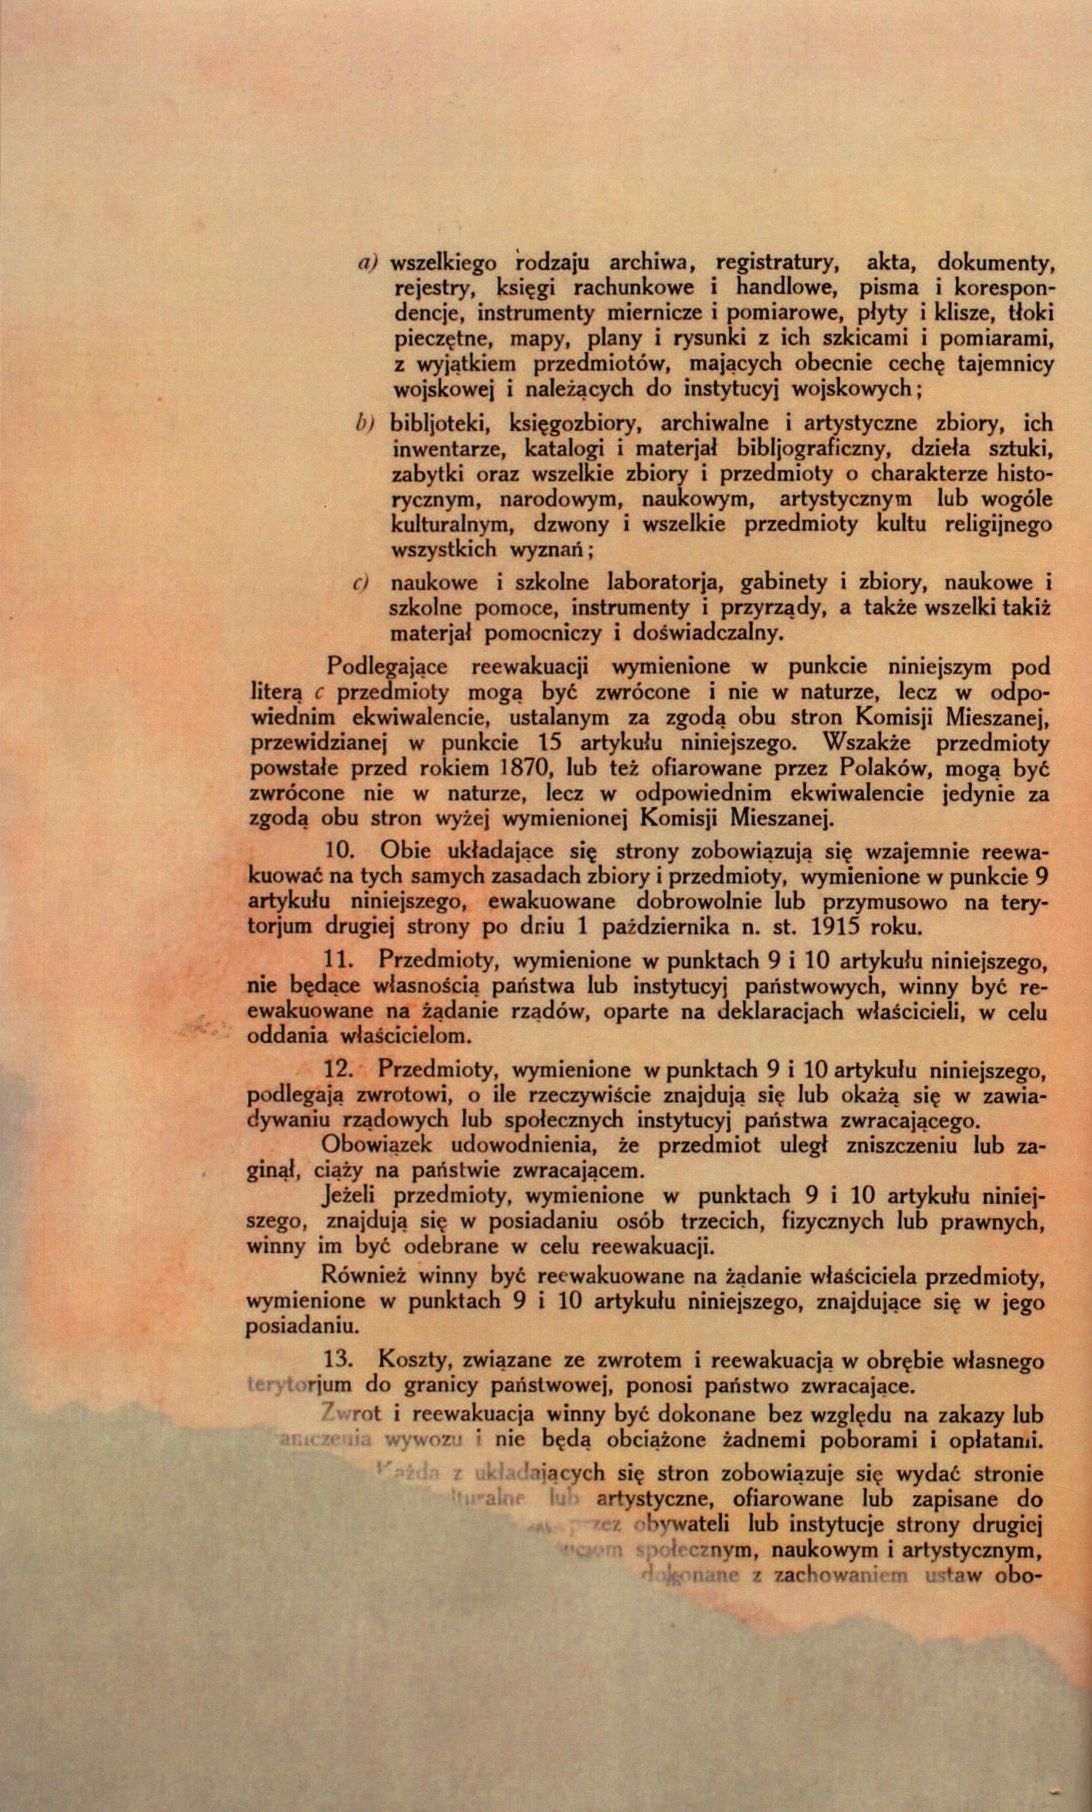 Traktat Pokoju między Polską a Rosją i Ukrainą podpisany w Rydze dnia 18 marca 1921 roku, s. 14, MSZ, sygn. 6739.